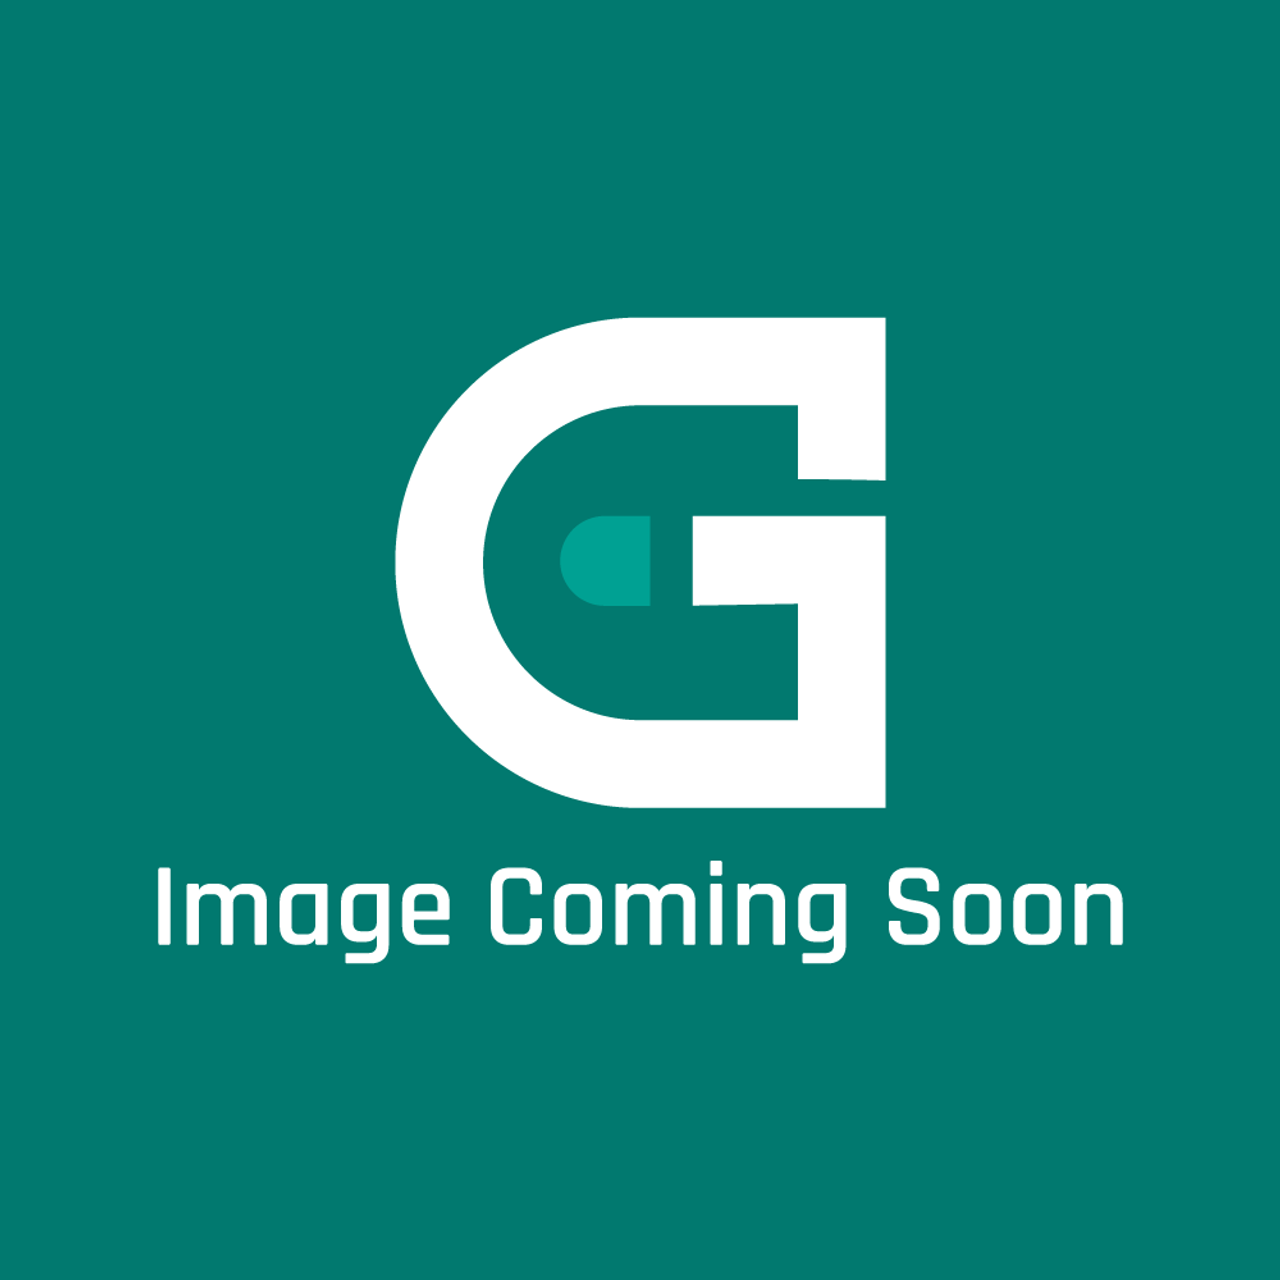 Viking G3209186FGBR - DOOR ASSY 48" LH *FGBR* - Image Coming Soon!